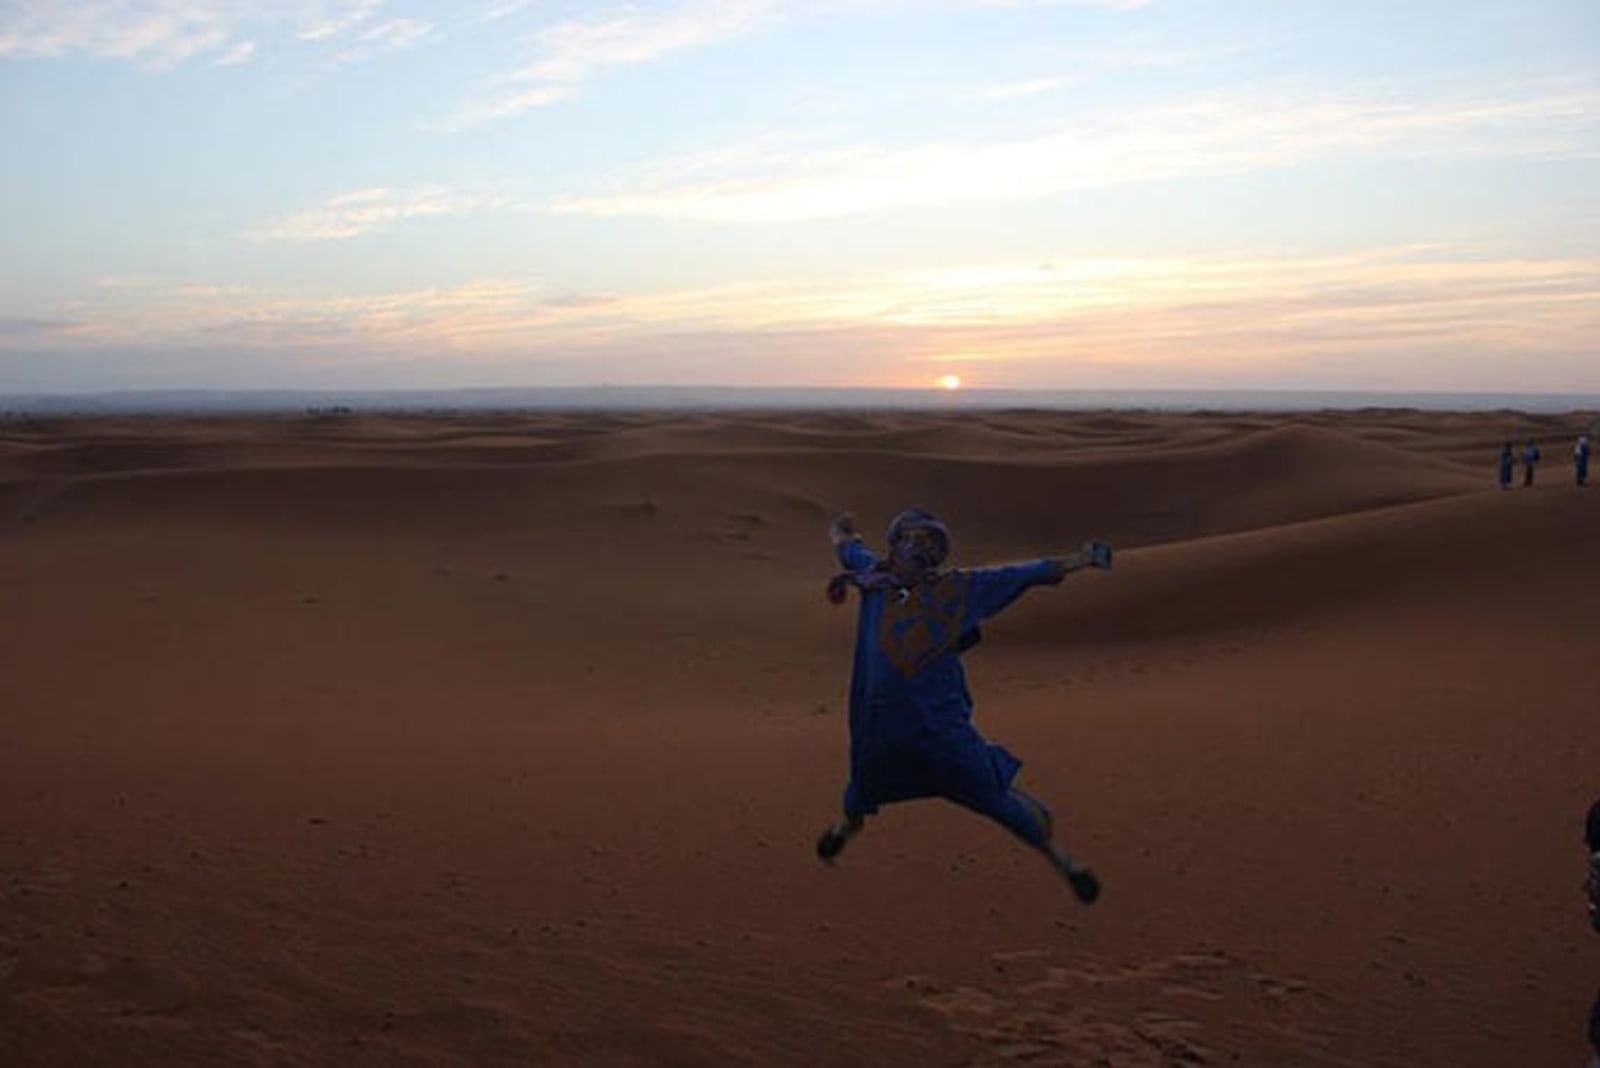 jumping-morocco-desert-anna-prior.jpg